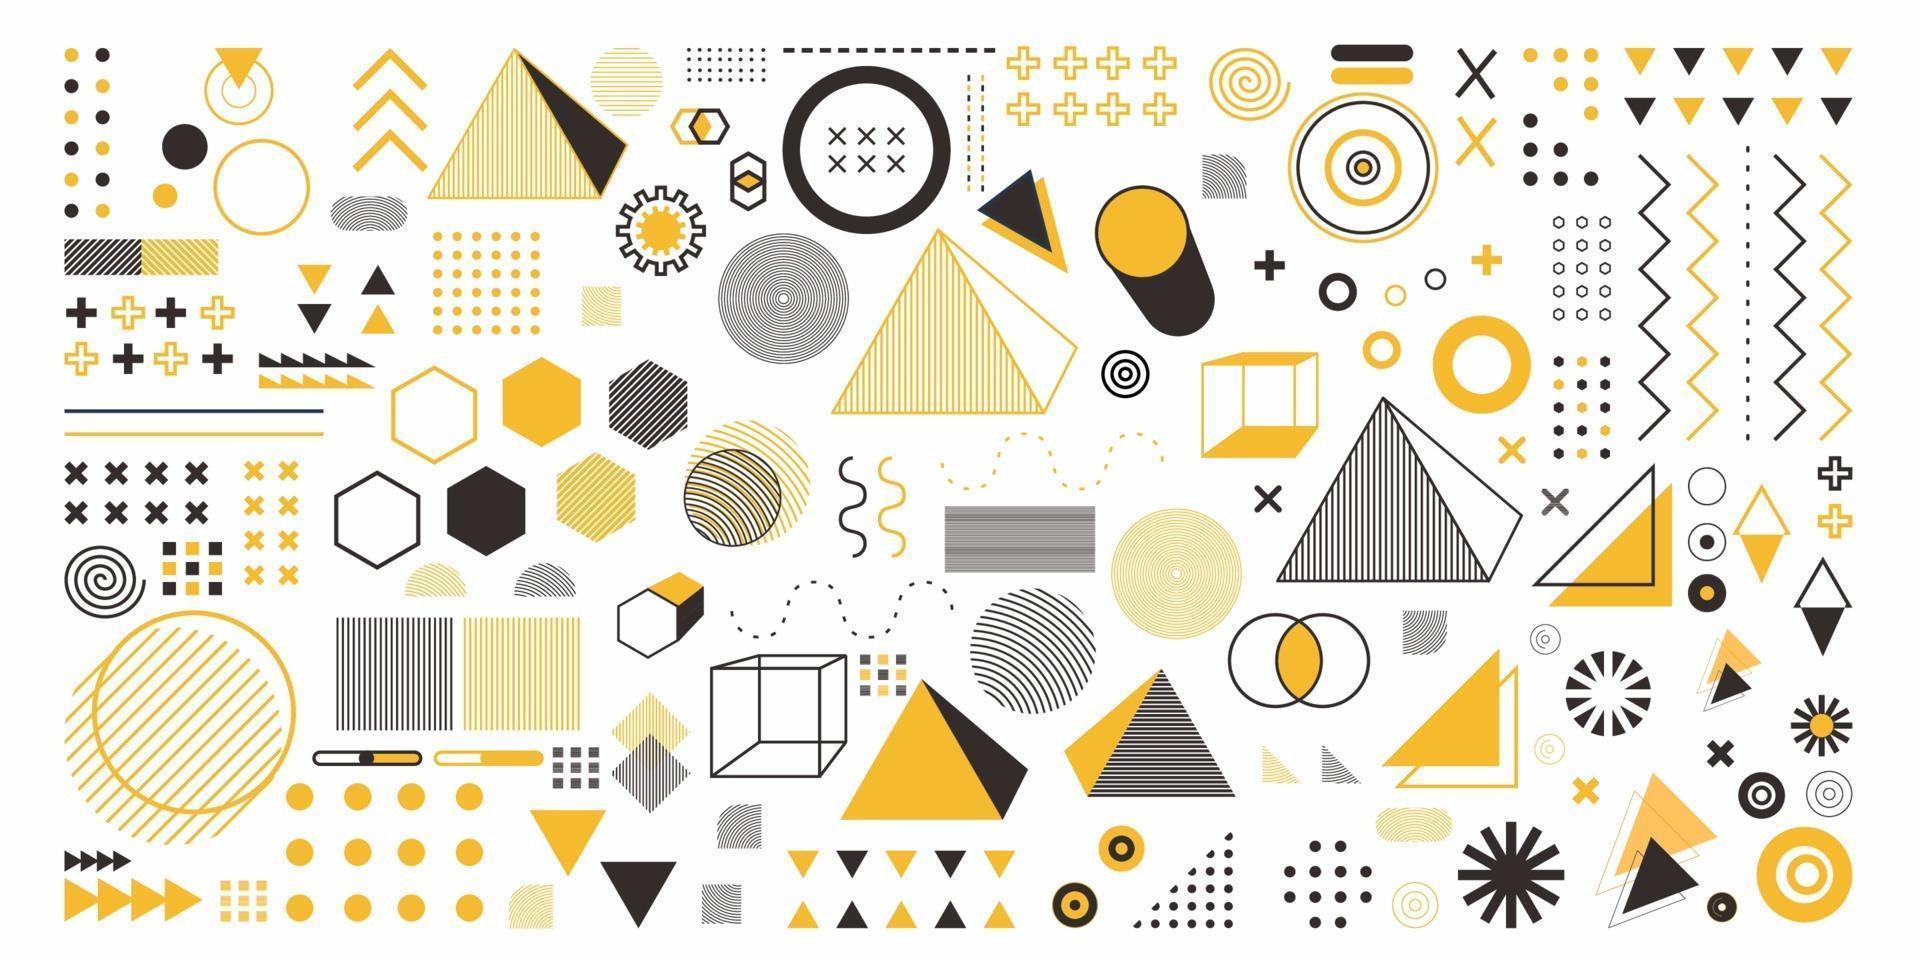 géométrie abstraite définie l'objet de couleur jaune. un ensemble de 100 arts de la conception géométrique. conception de memphis, éléments rétro pour le web, vintage, publicité, bannière commerciale, affiche, dépliant, panneau d'affichage, vente vecteur